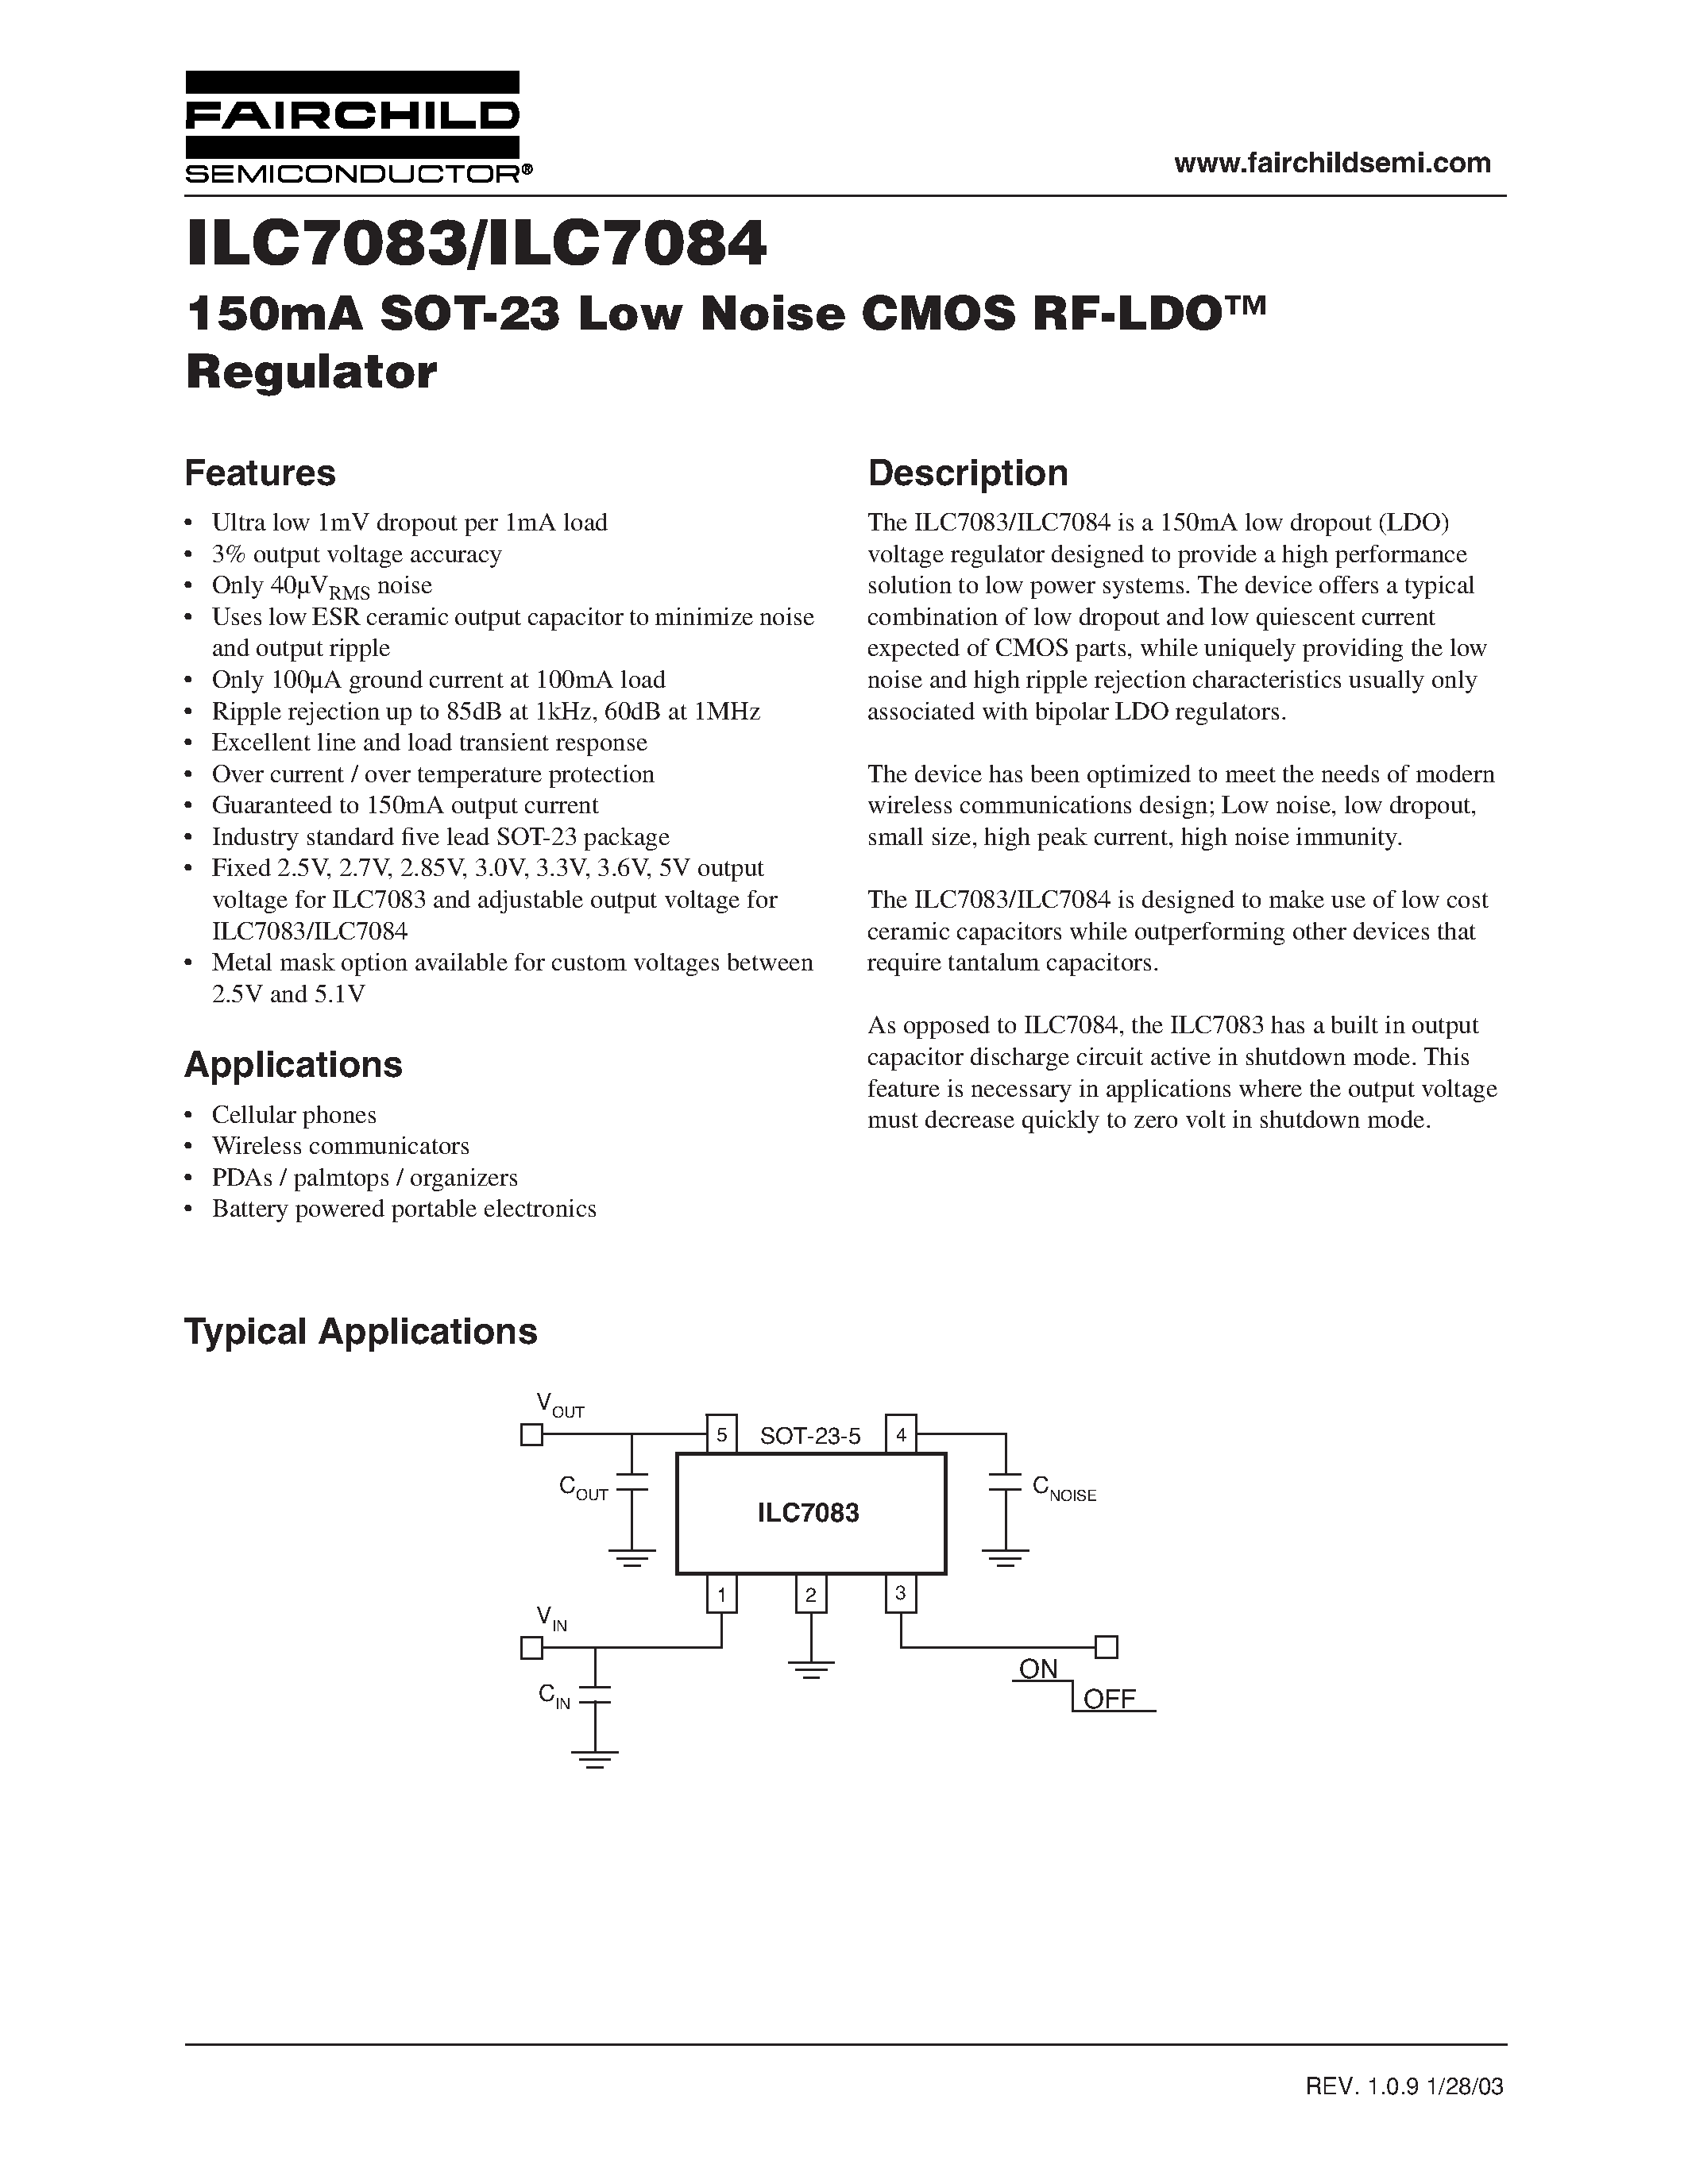 Даташит ILC7083 - 150mA SOT-23 Low Noise CMOS RF-LDO Regulator страница 1